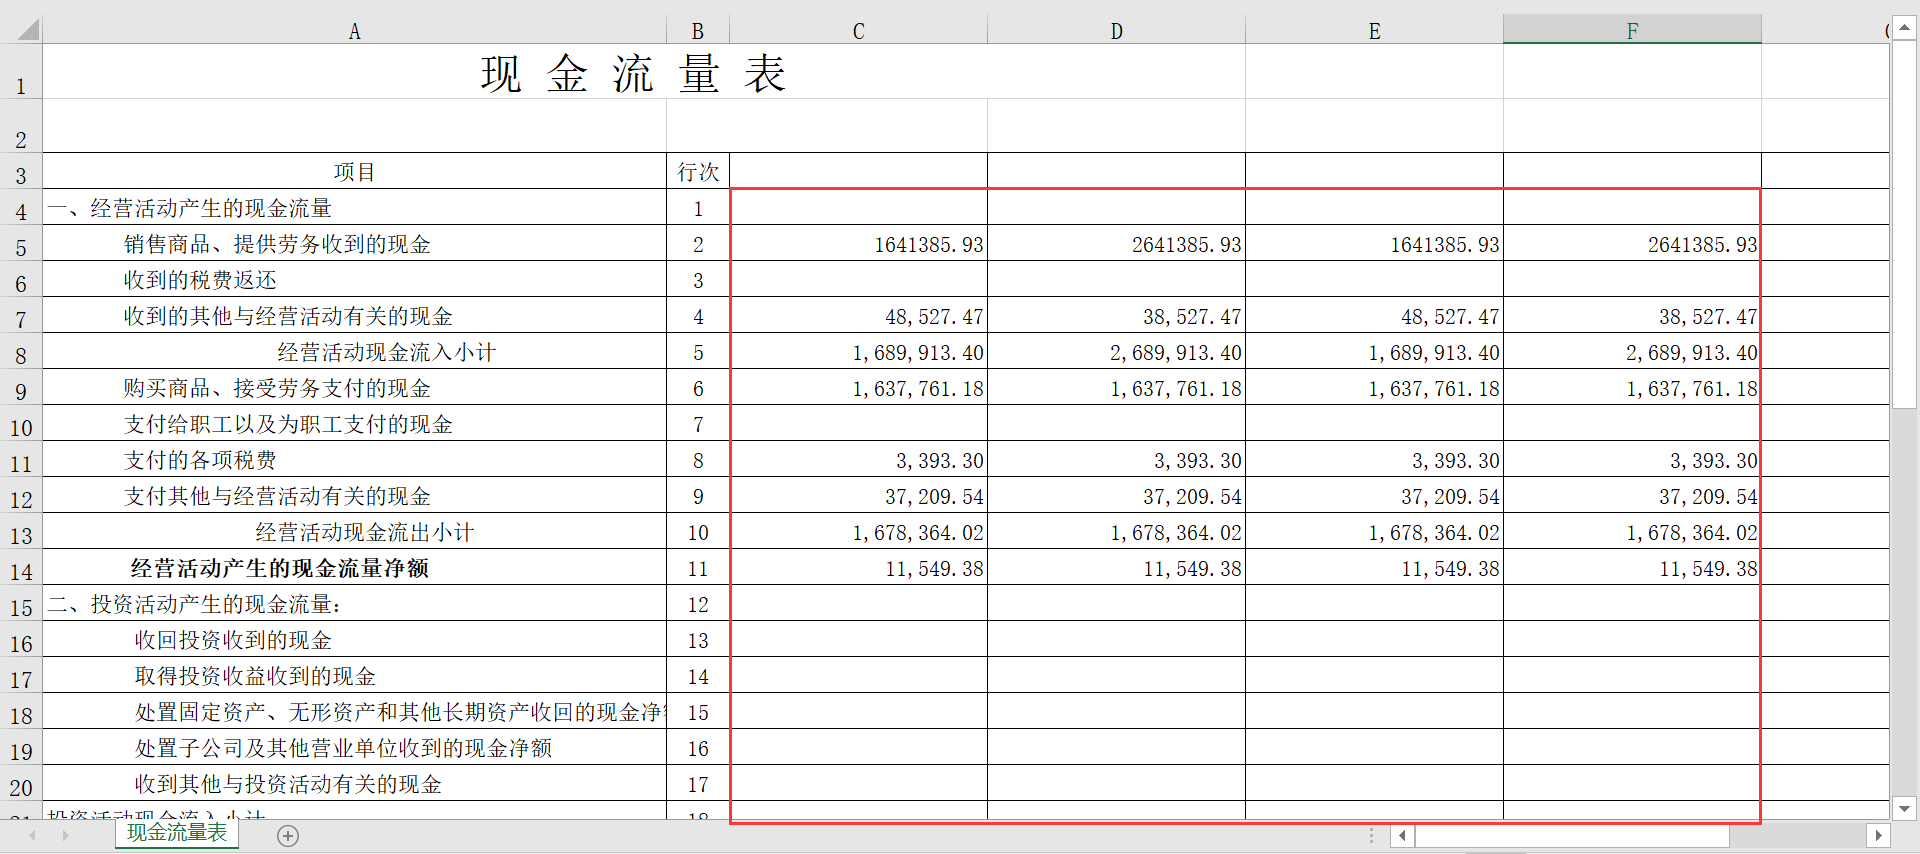 如何将多个 Excel 的格值填入到汇总表的不同列上